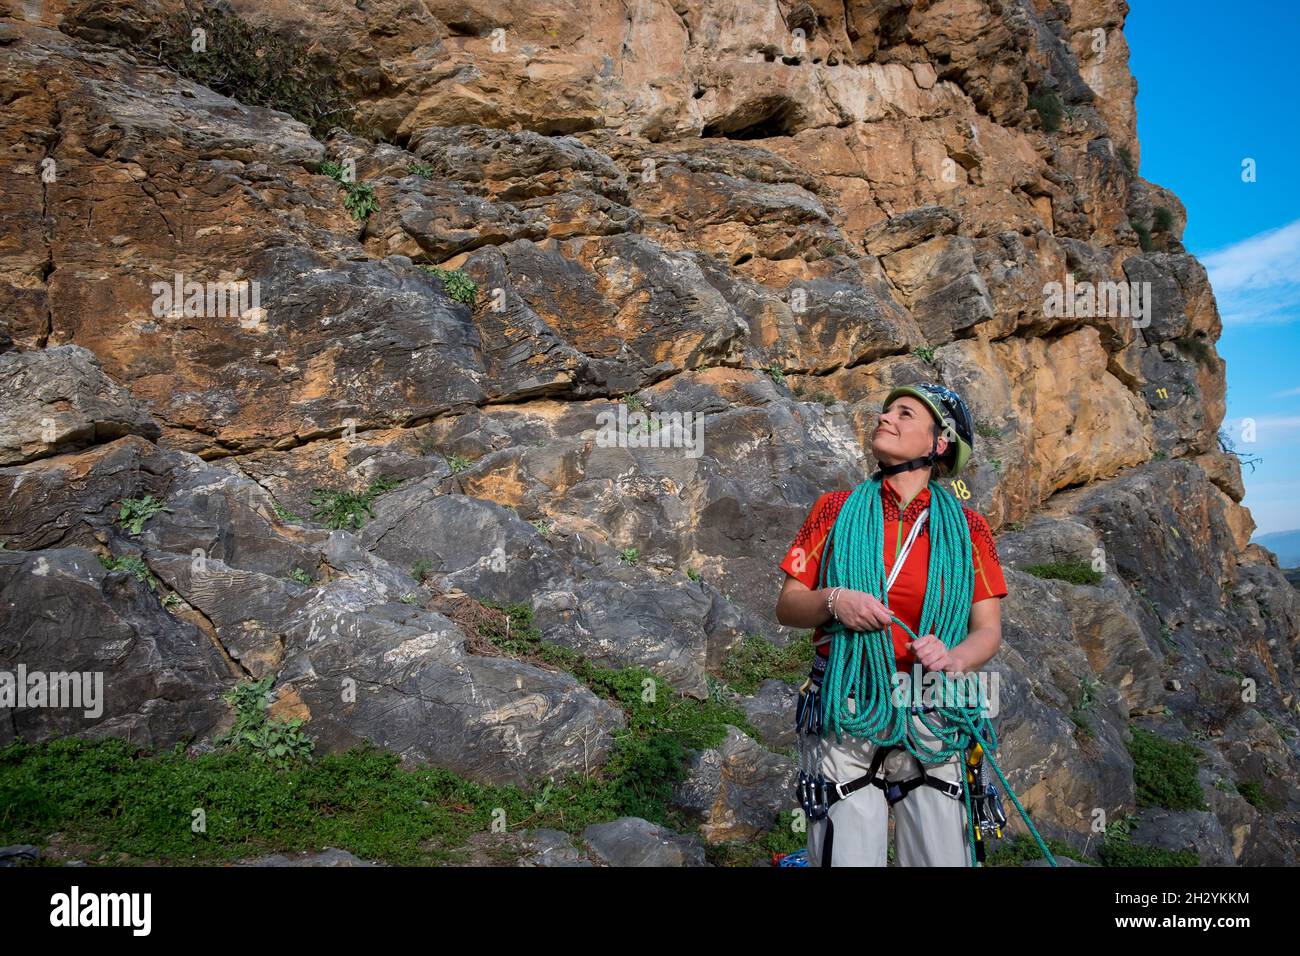 Escalador de roca femenina que enrolla la cuerda Foto de stock